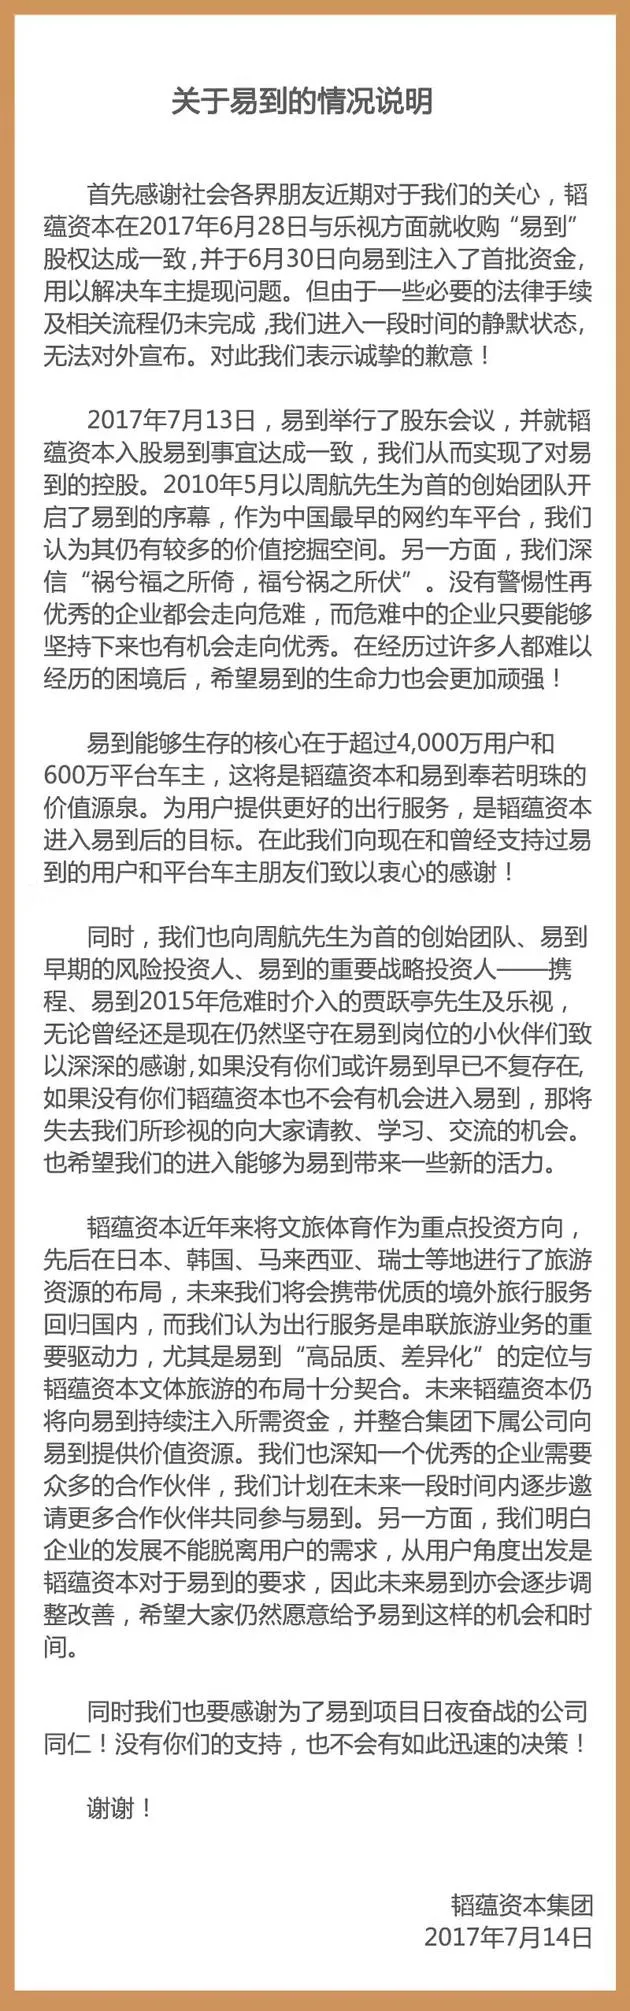 韬蕴资本集团就易到情况发布说明：6月30日已注入首批资金